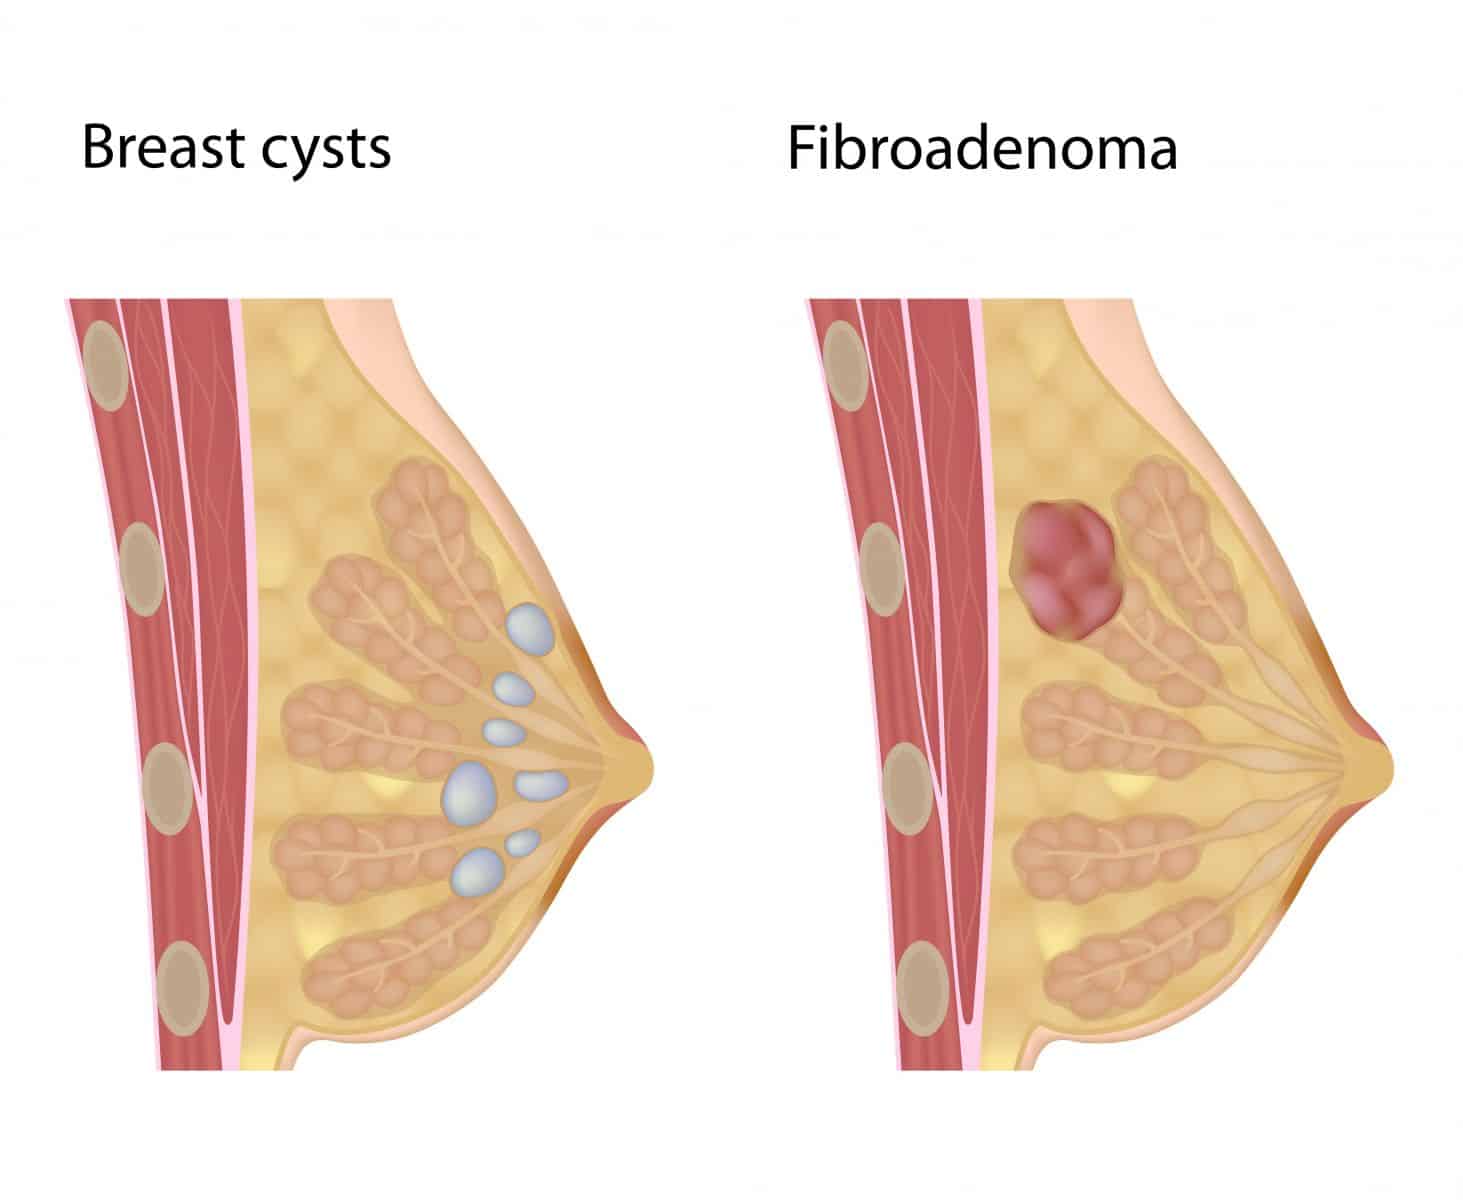 الفرق بين الكيس و الفيبروم في الثدي